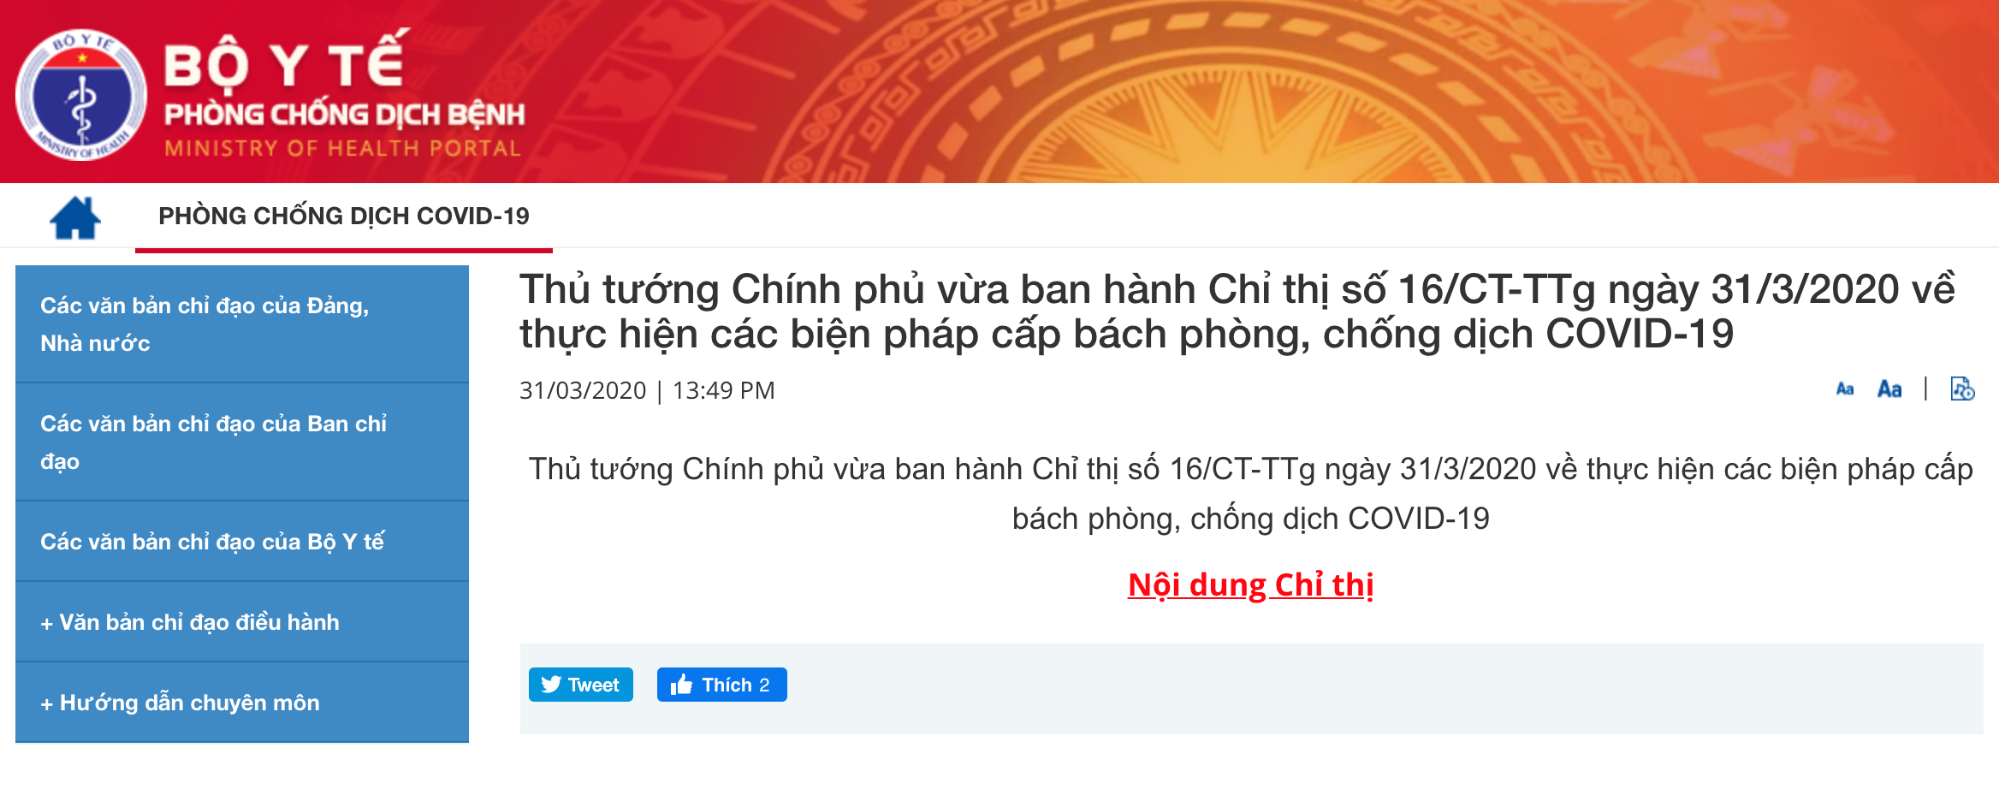 screenshot from vietnamese website